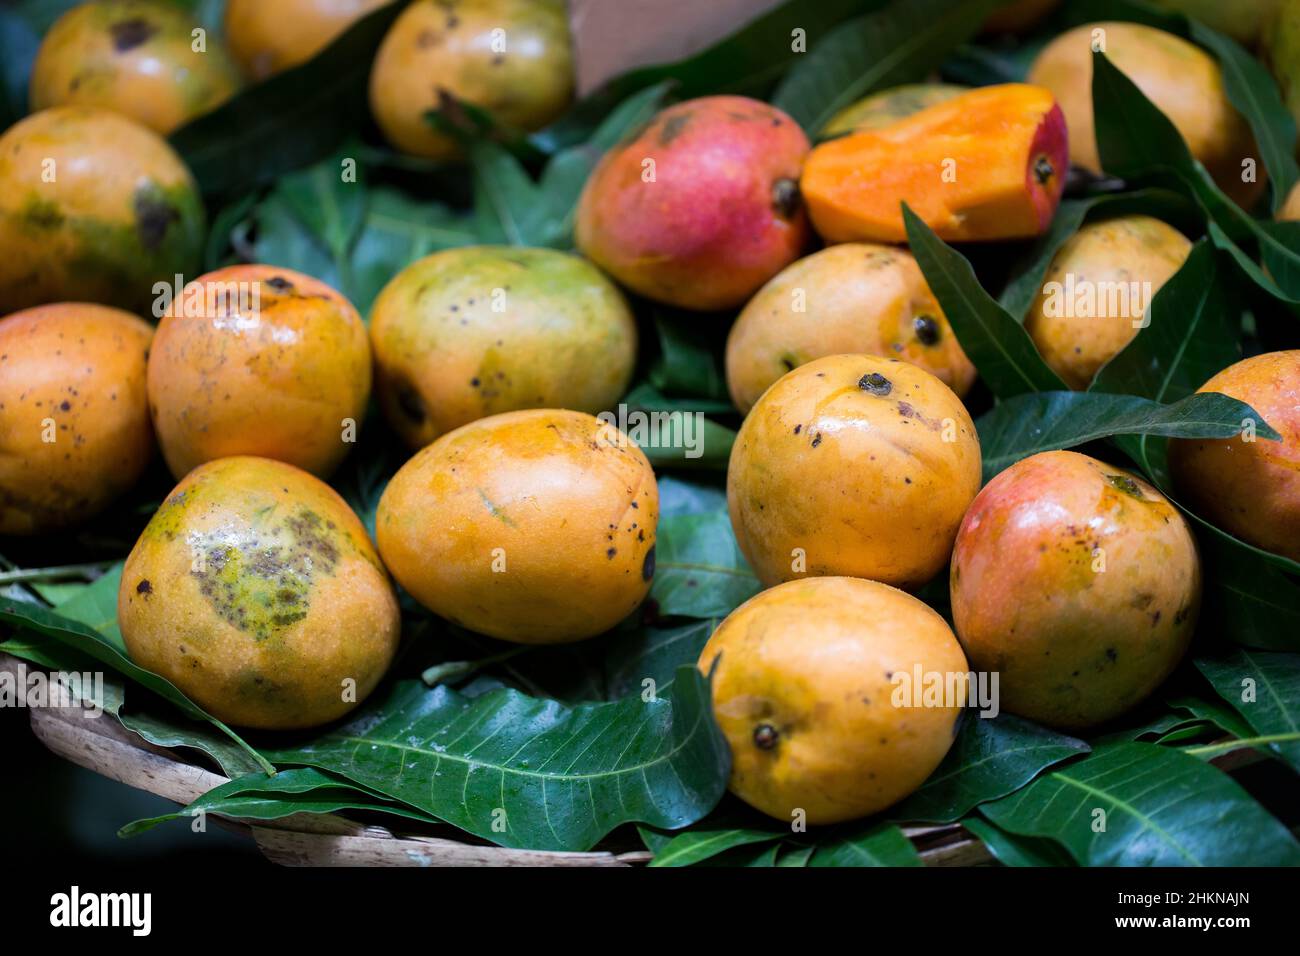 Selling Mango Fotos e Imágenes de stock - Página 7 - Alamy